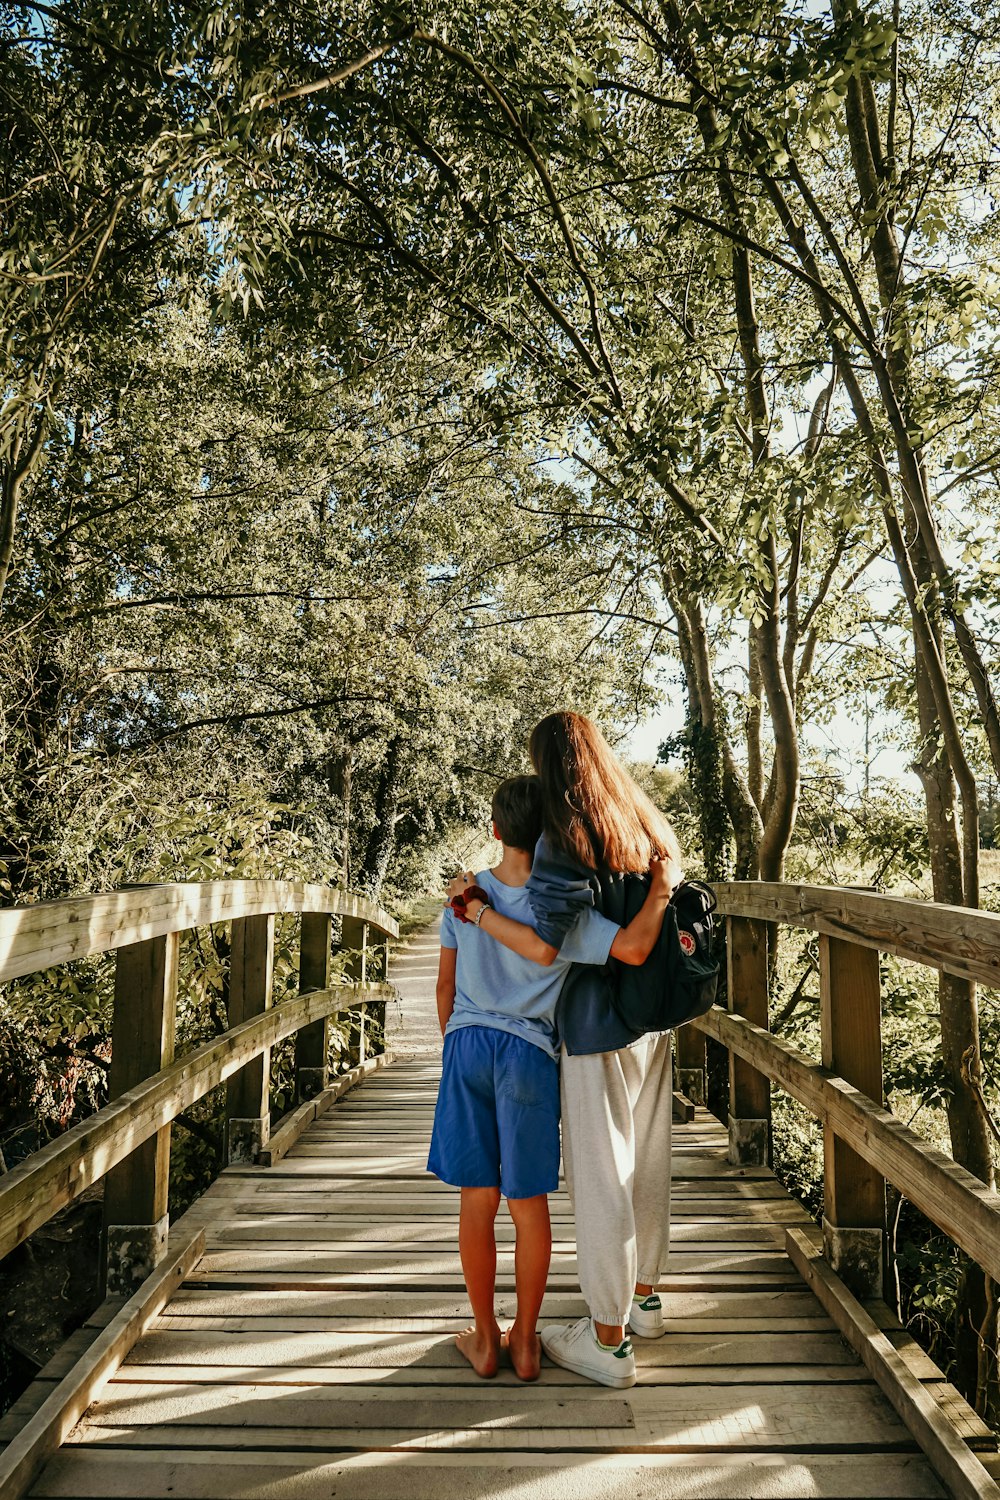 木の橋の上に立つ少年と女